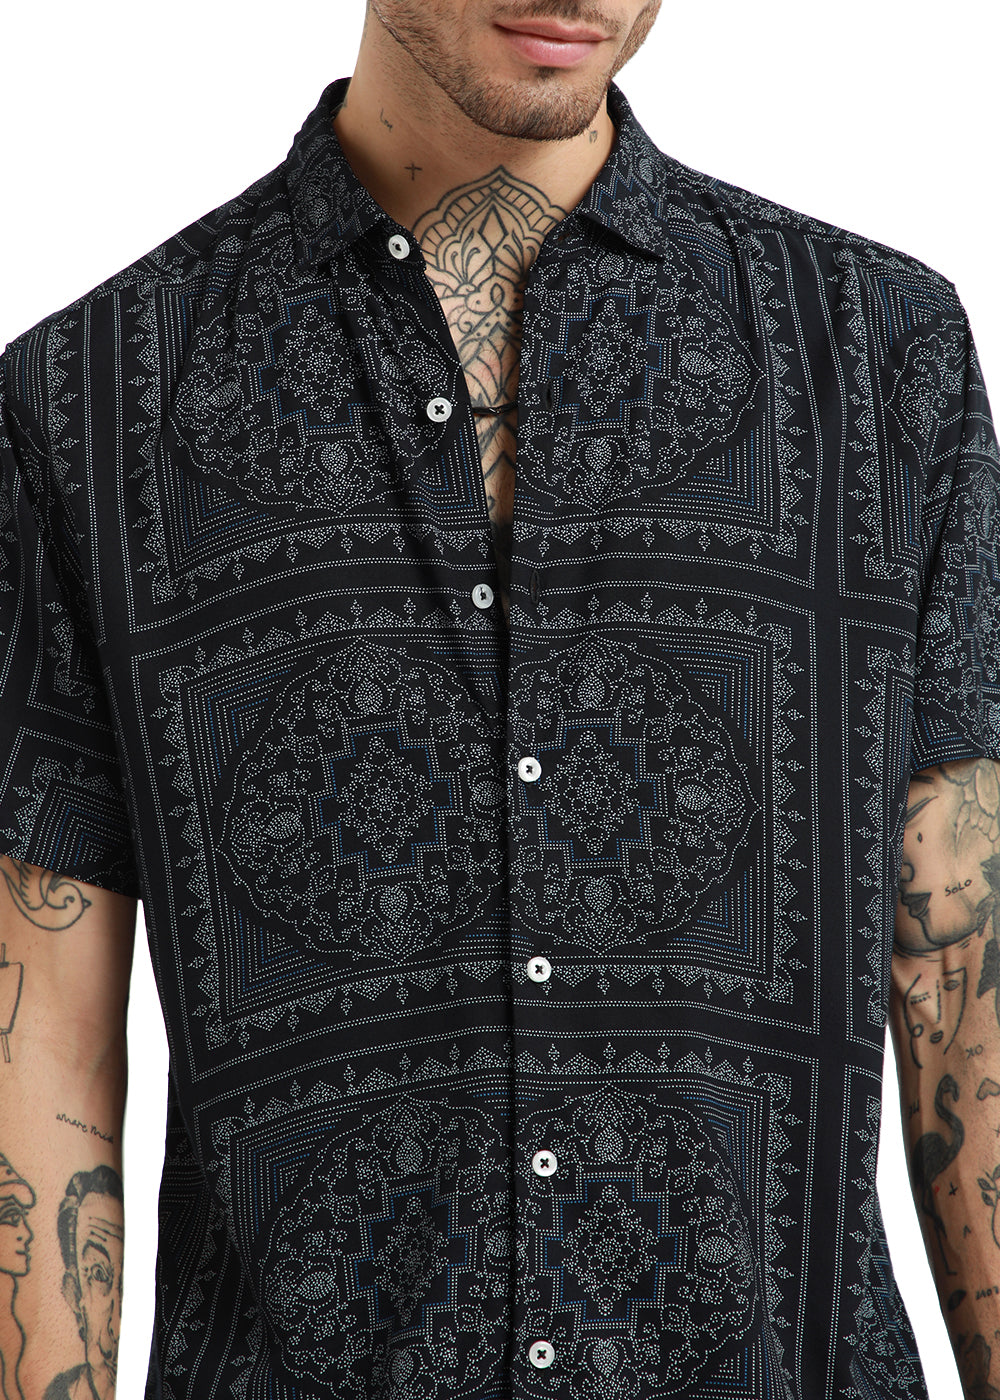 Black Mandala print Half Sleeve Shirt